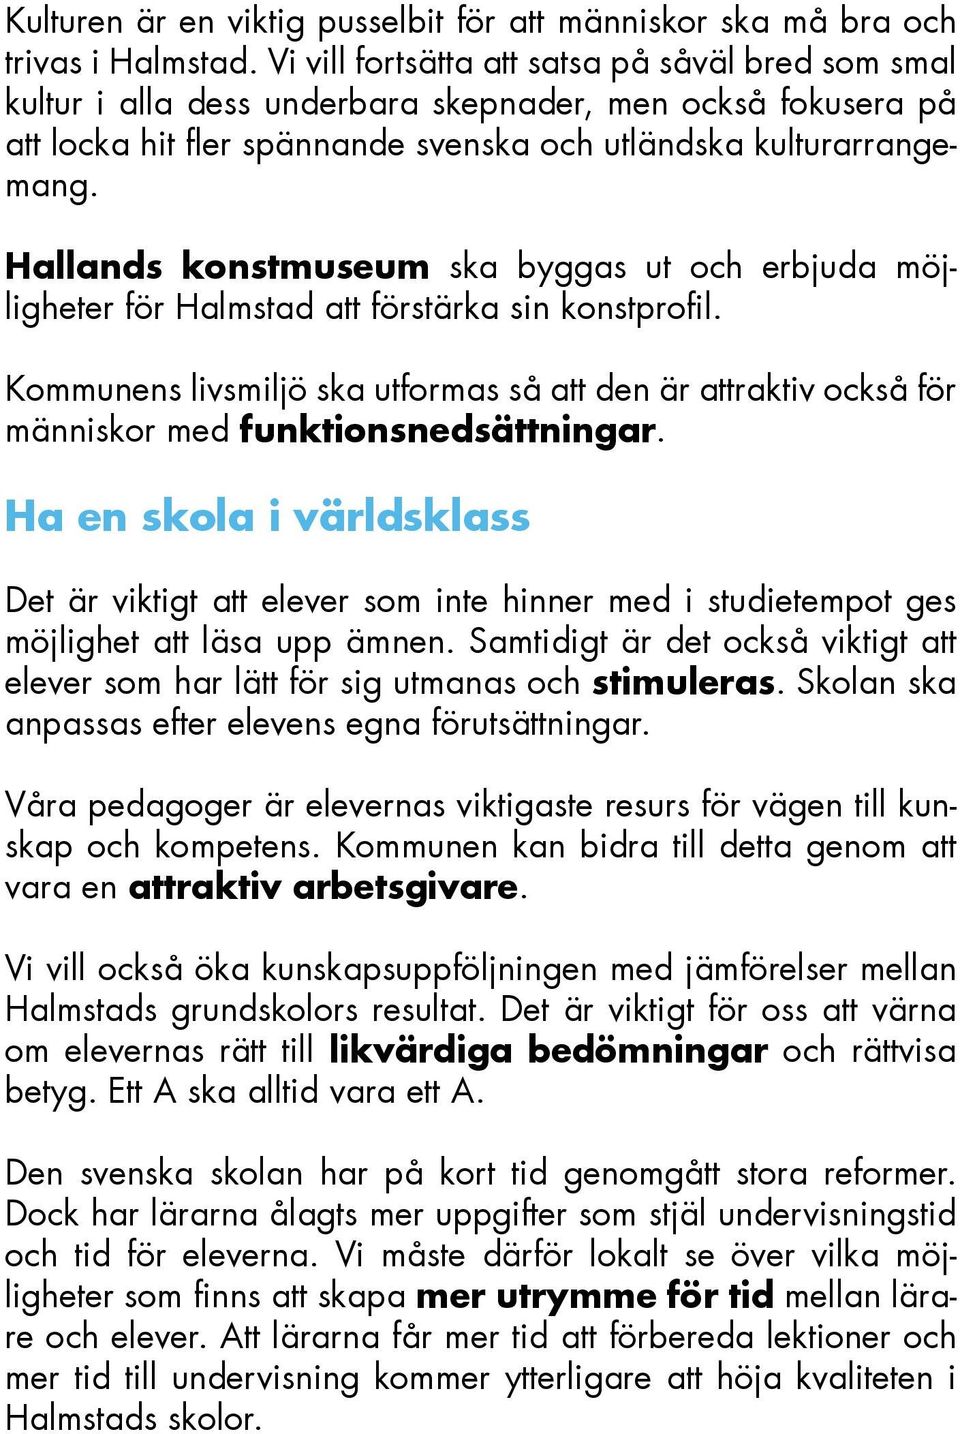 Hallands konstmuseum ska byggas ut och erbjuda möjligheter för Halmstad att förstärka sin konstprofil.